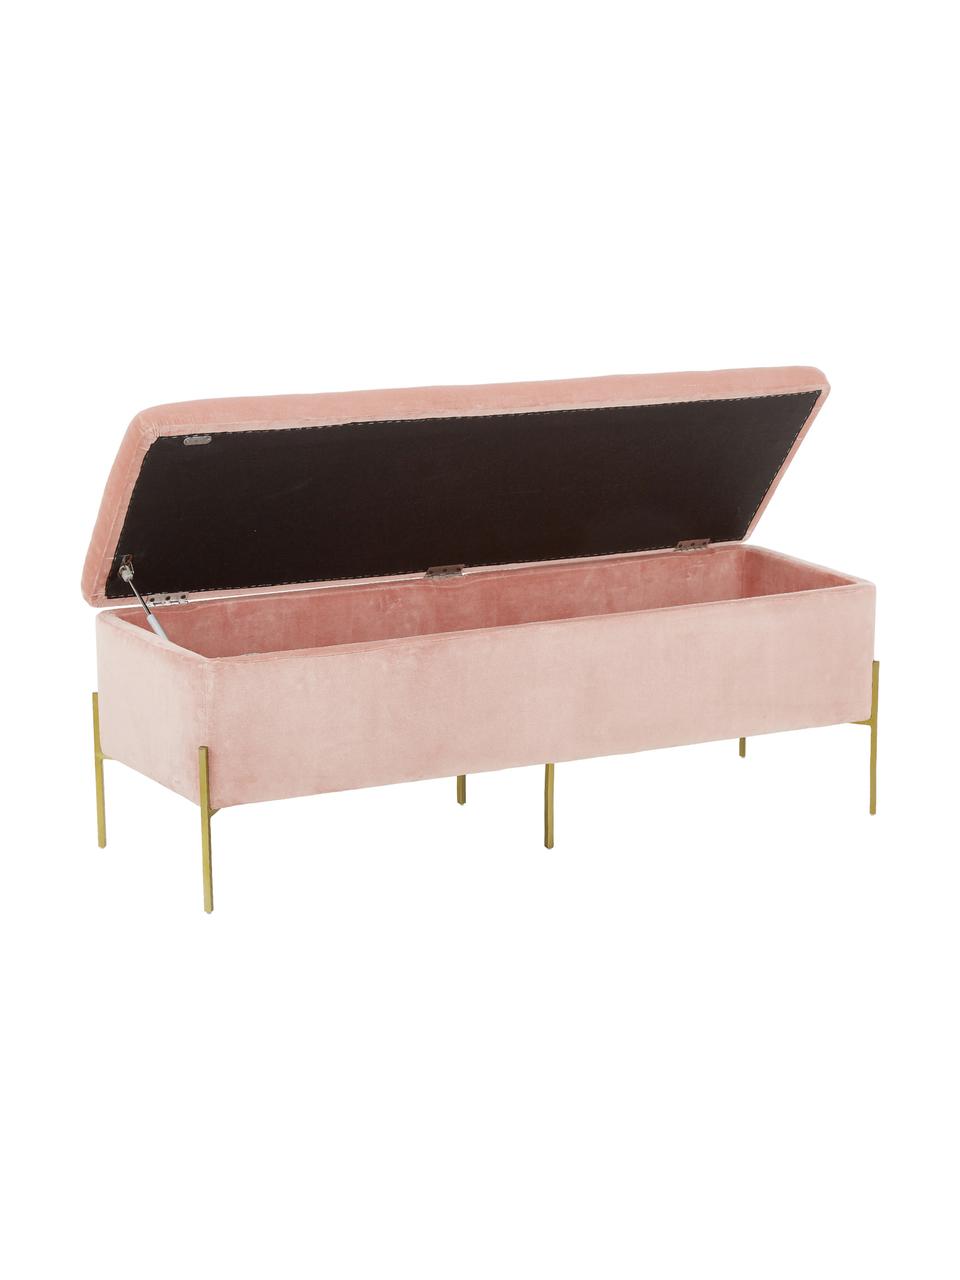 Fluwelen bank Harper met opbergruimte in roze, Bekleding: katoenfluweel, Voet: gepoedercoat metaal, Fluweel roze, goudkleurig, B 140 x H 45 cm